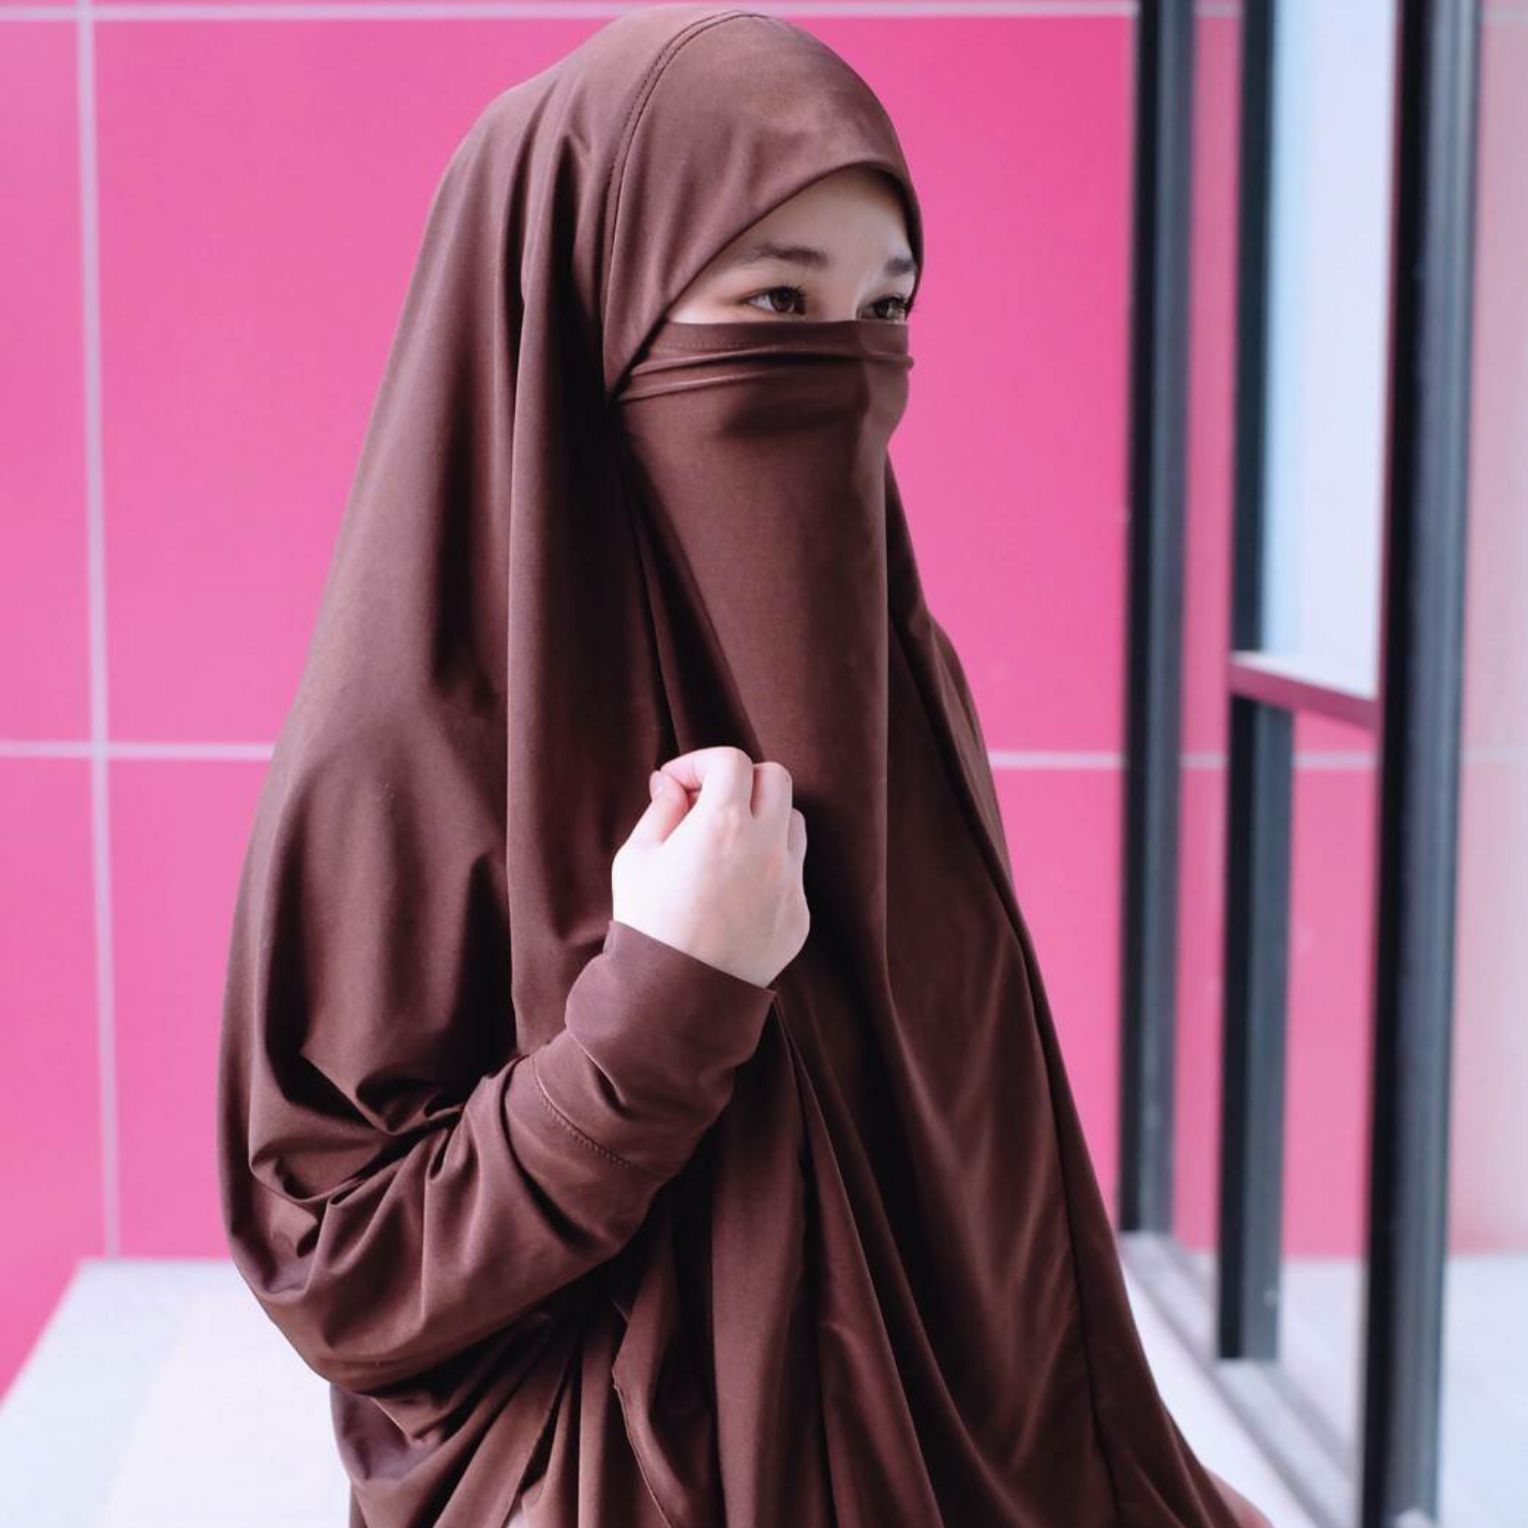 hijab ฮิญาบผรั่งเศสมีแขนรุ่นนี้สะดวกมากๆใส่ง่ายใส่สวยดูดี เปิด-ปิดหน้าได้ มีแขนในตัวมีเชือกผูกด้านใน